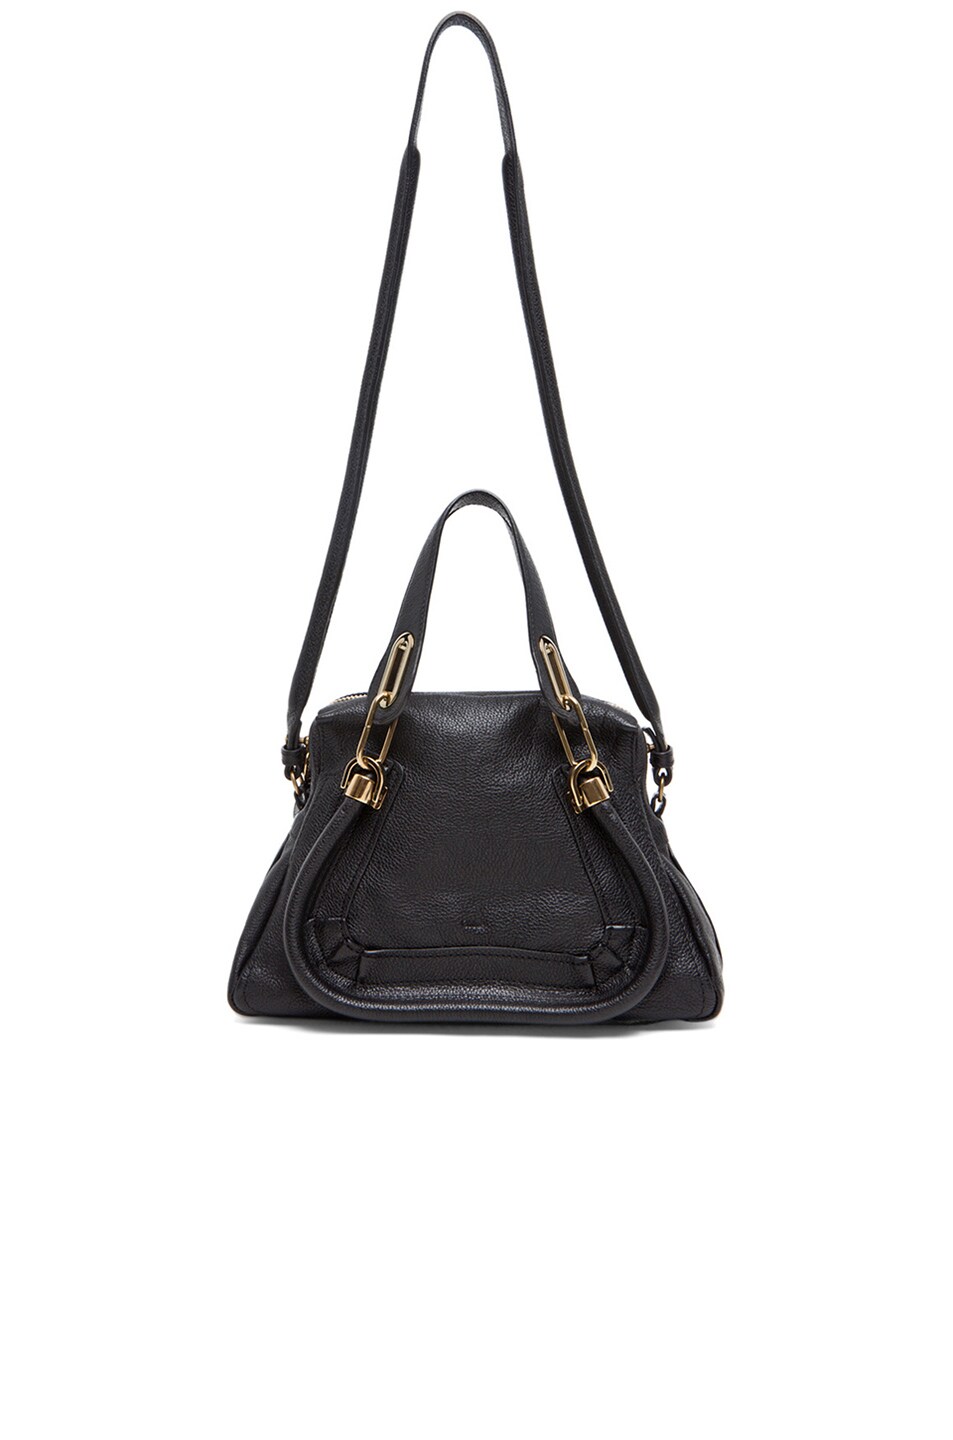 Chloe Small Paraty Bag in Black | FWRD